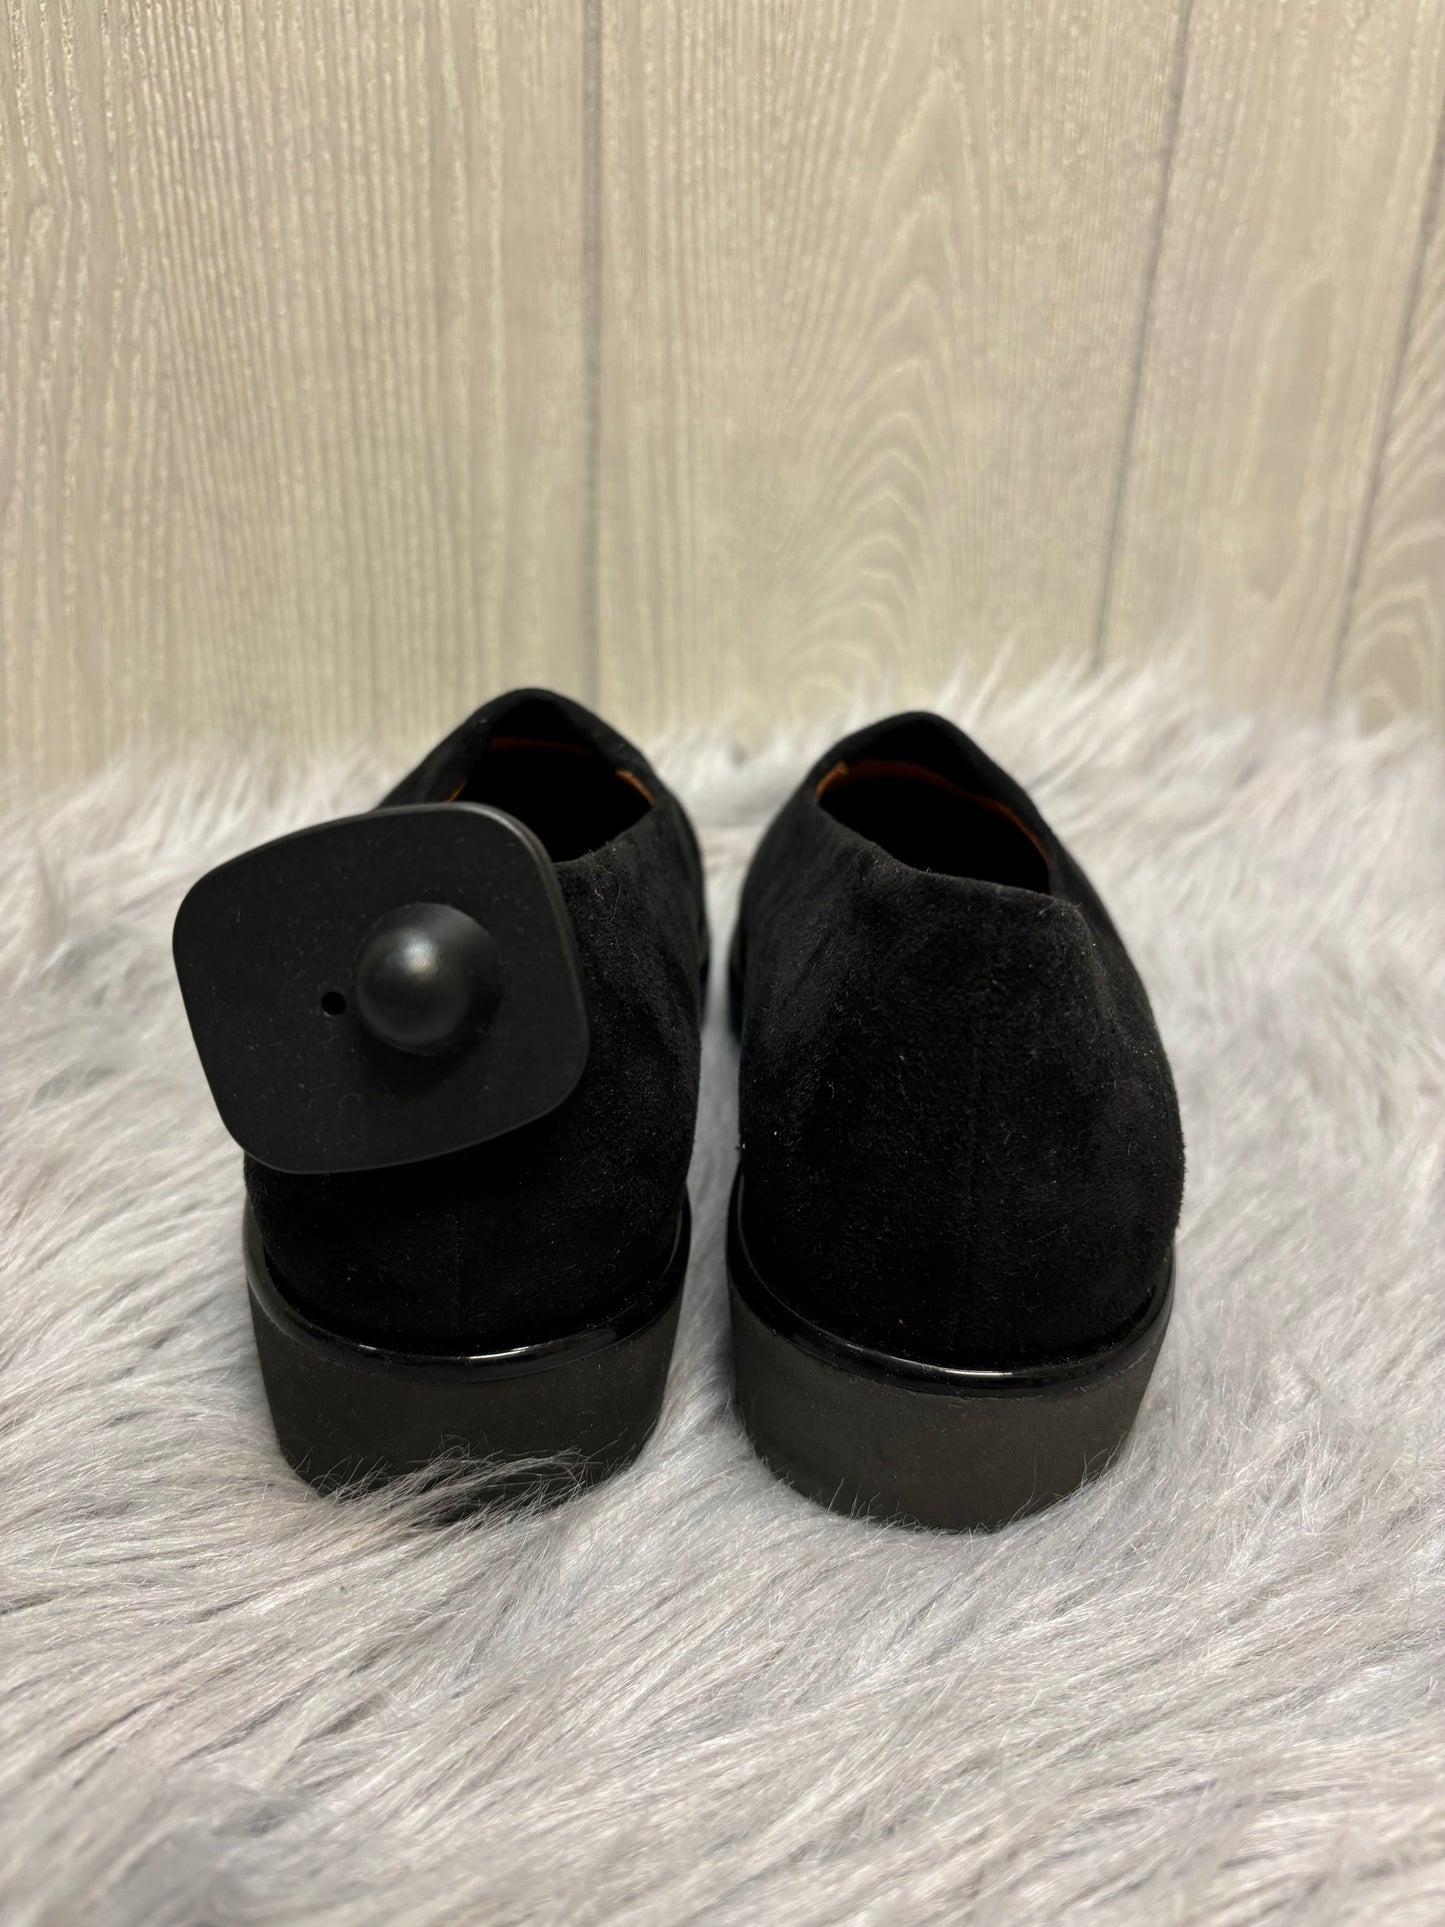 Black & Brown Sandals Heels Block Cmc, Size 7